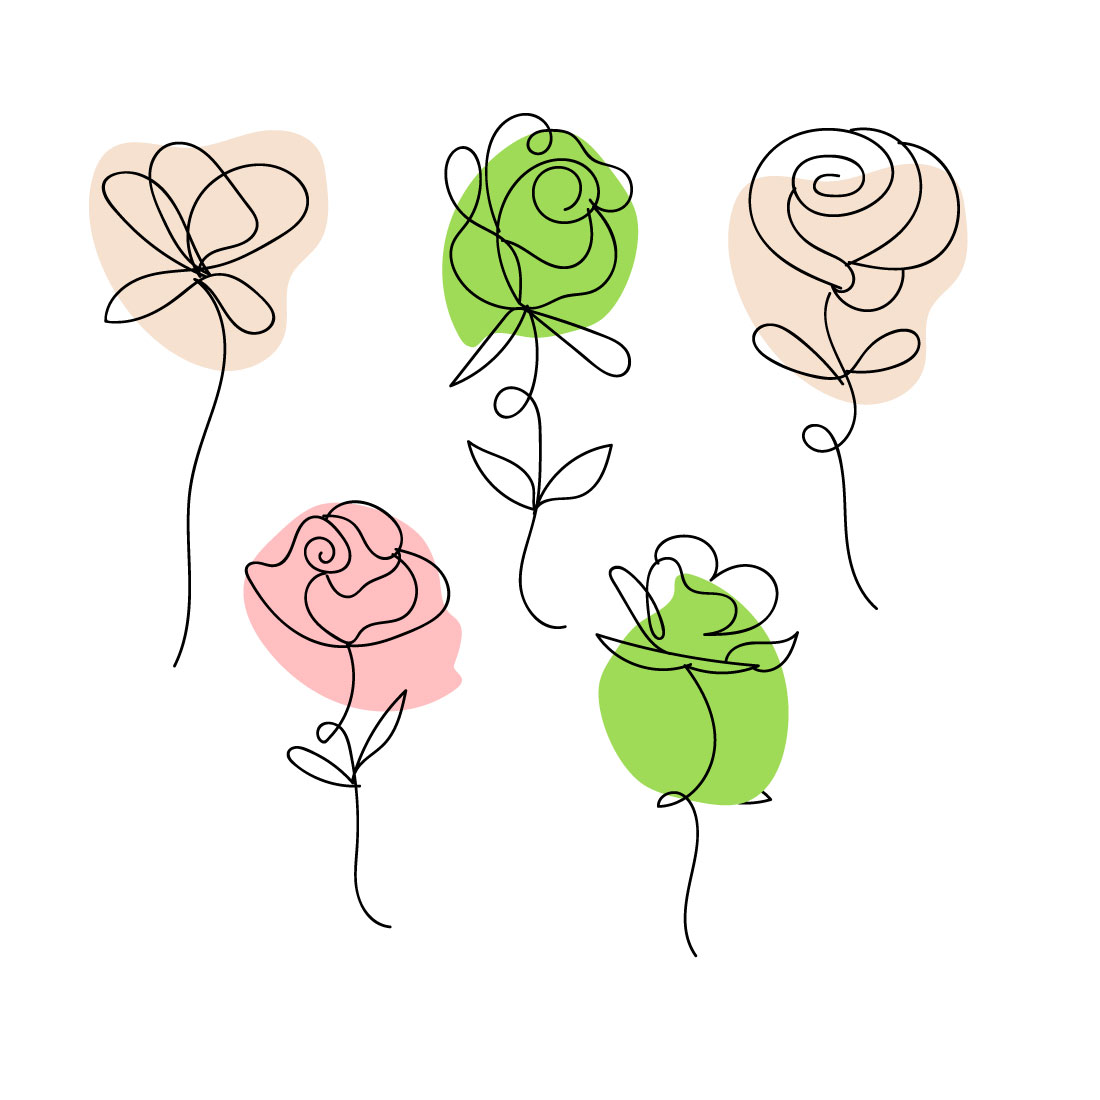 Rose Liner Art SVG Bundle main cover